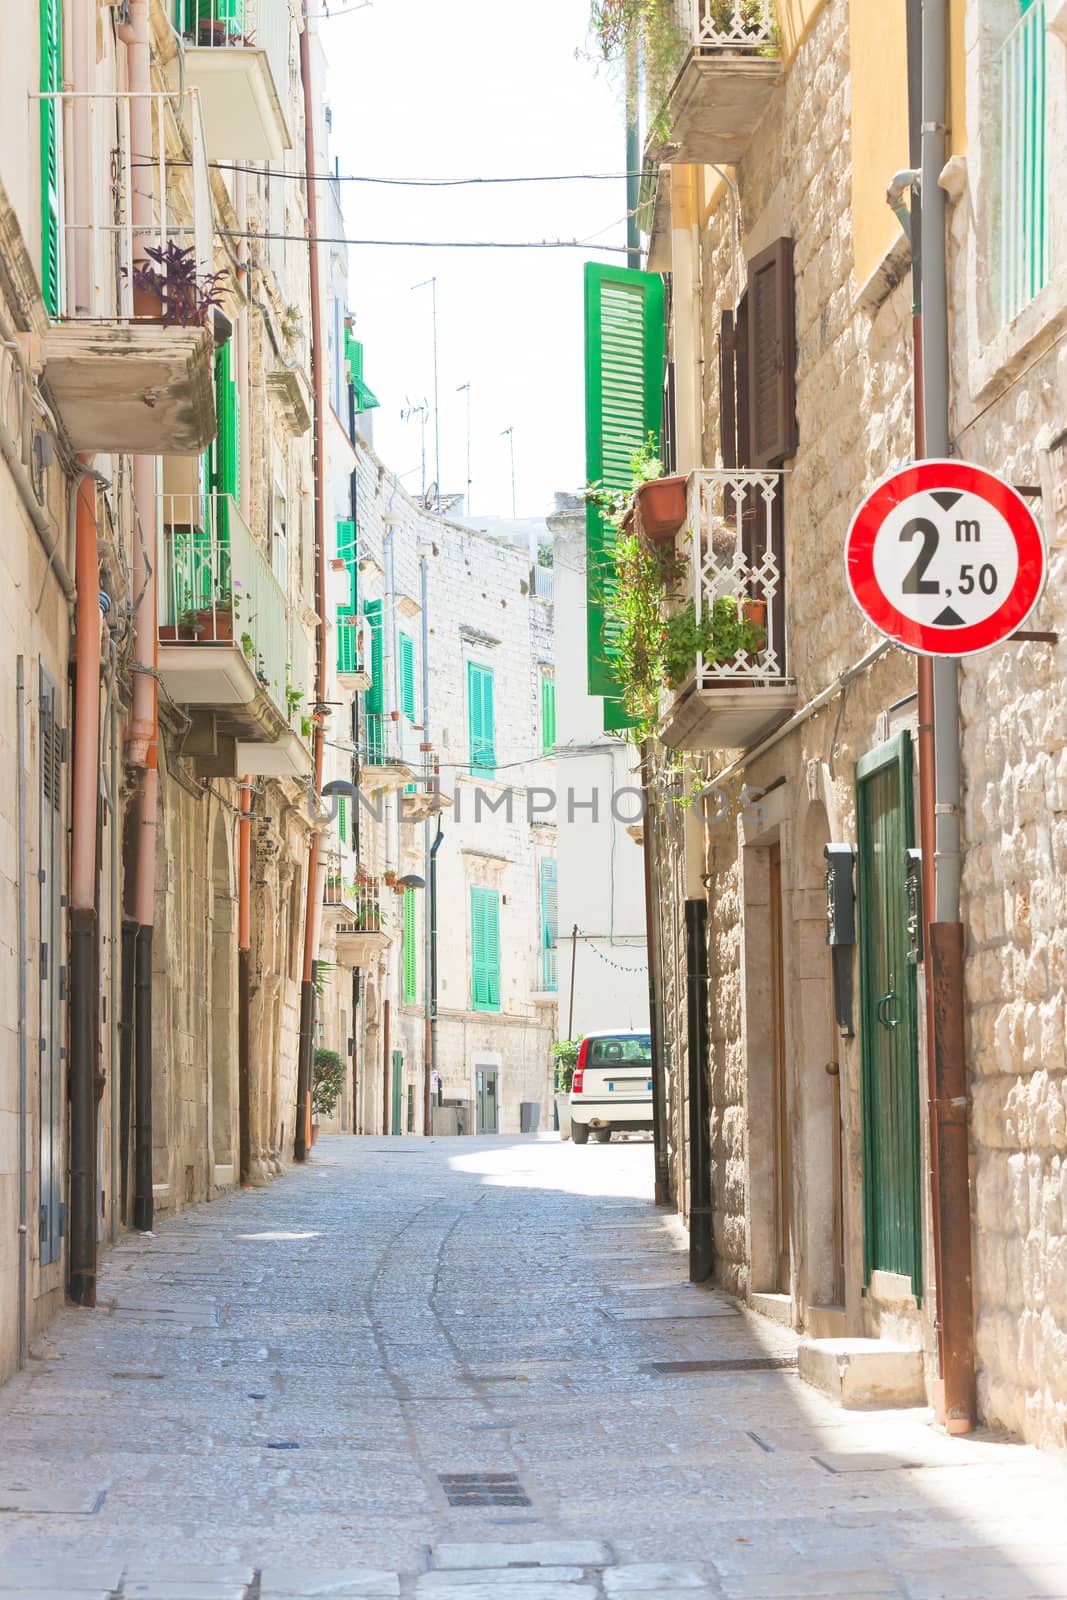 Molfetta, Apulia - Walking through an old alleyway in Molfetta by tagstiles.com